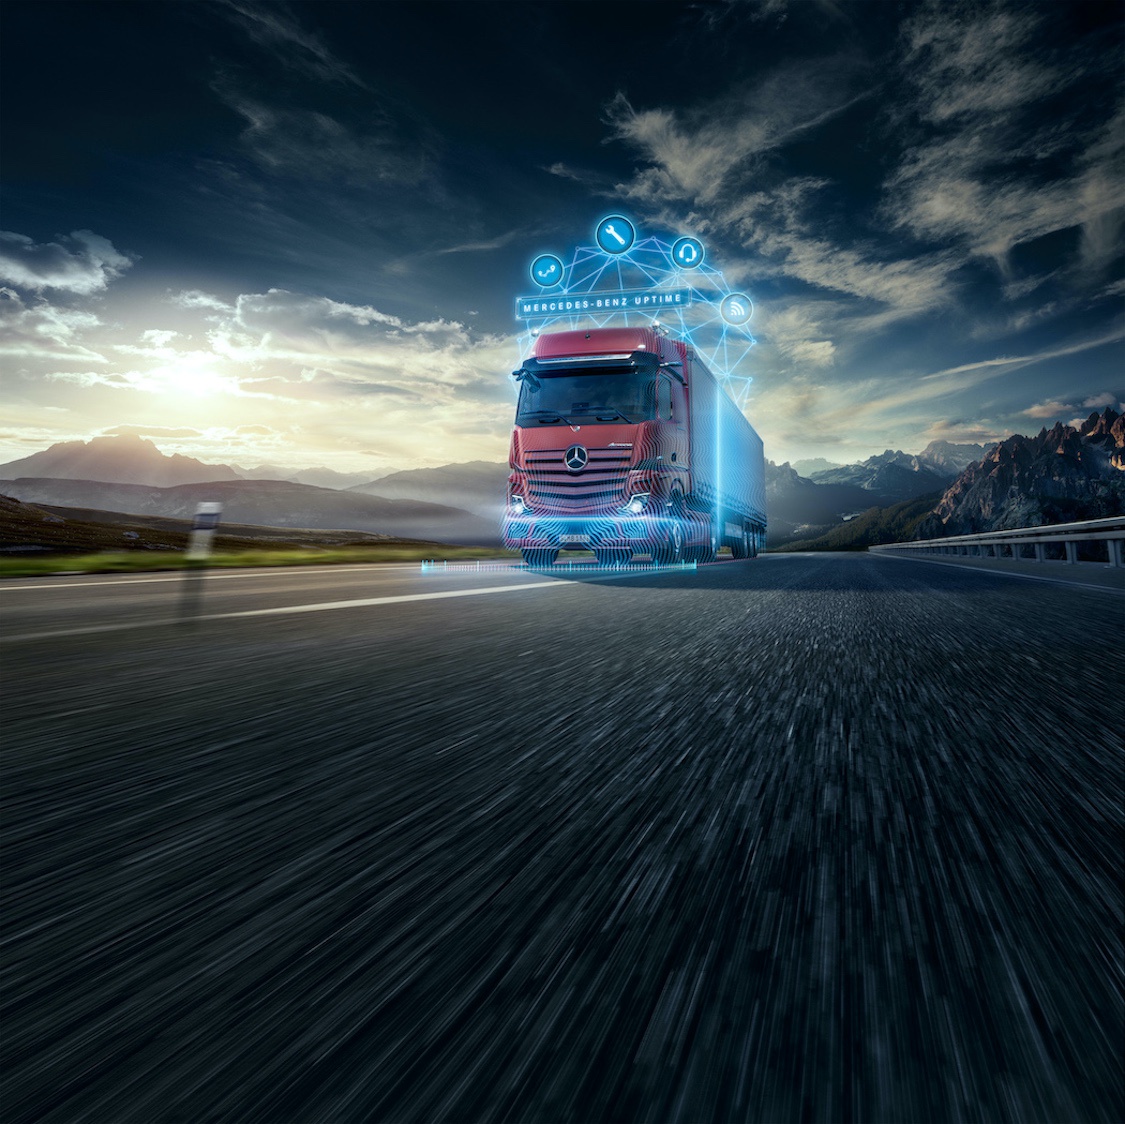 戴姆勒展示旗下梅赛德斯-奔驰卡车新技术与产品